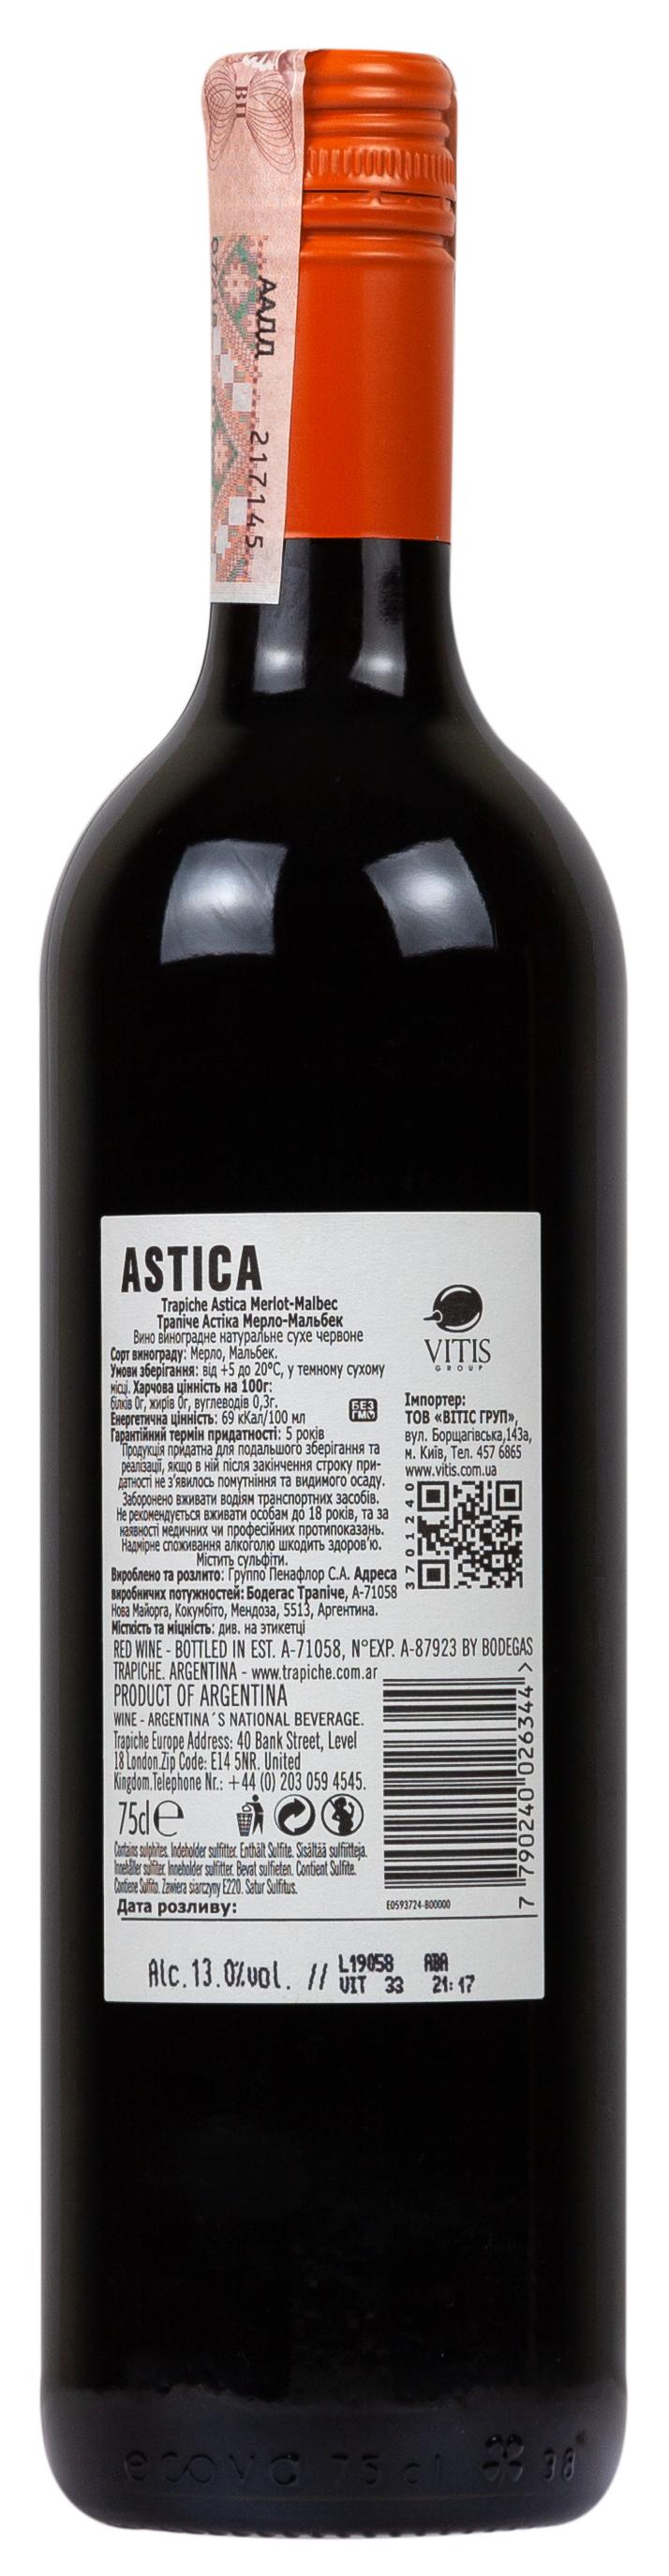 Trapiche Astica Merlot I Malbec 2018 Set 6 bottles - 2